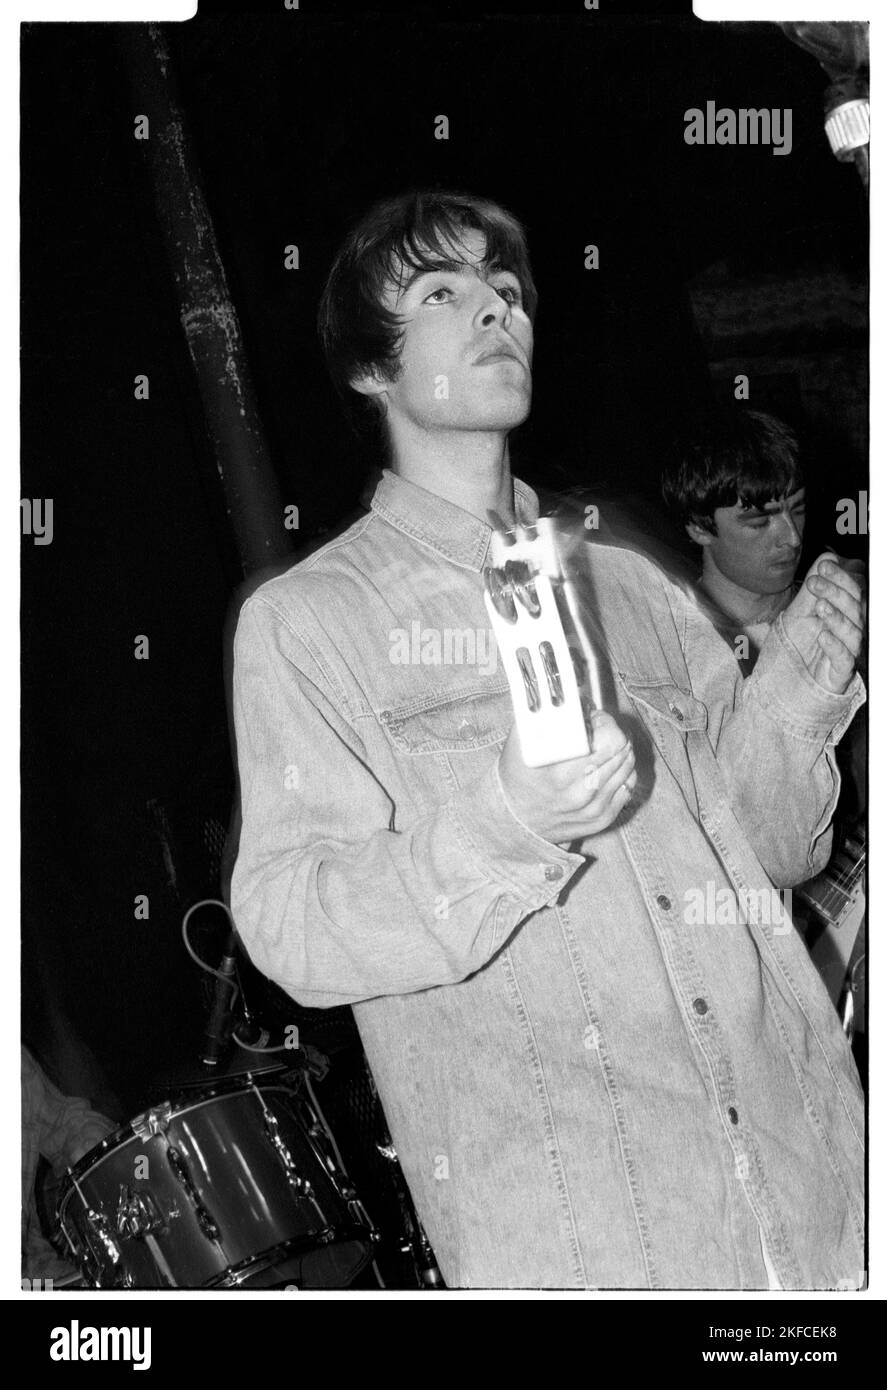 Liam Gallagher d'Oasis au molleton et Firkin à Bristol, Angleterre, 30 mars 1994. Lors de ce premier concert, le groupe légendaire a joué comme un soutien à un autre groupe indé en développement appelé Whiteout. Photo: Rob Watkins Banque D'Images